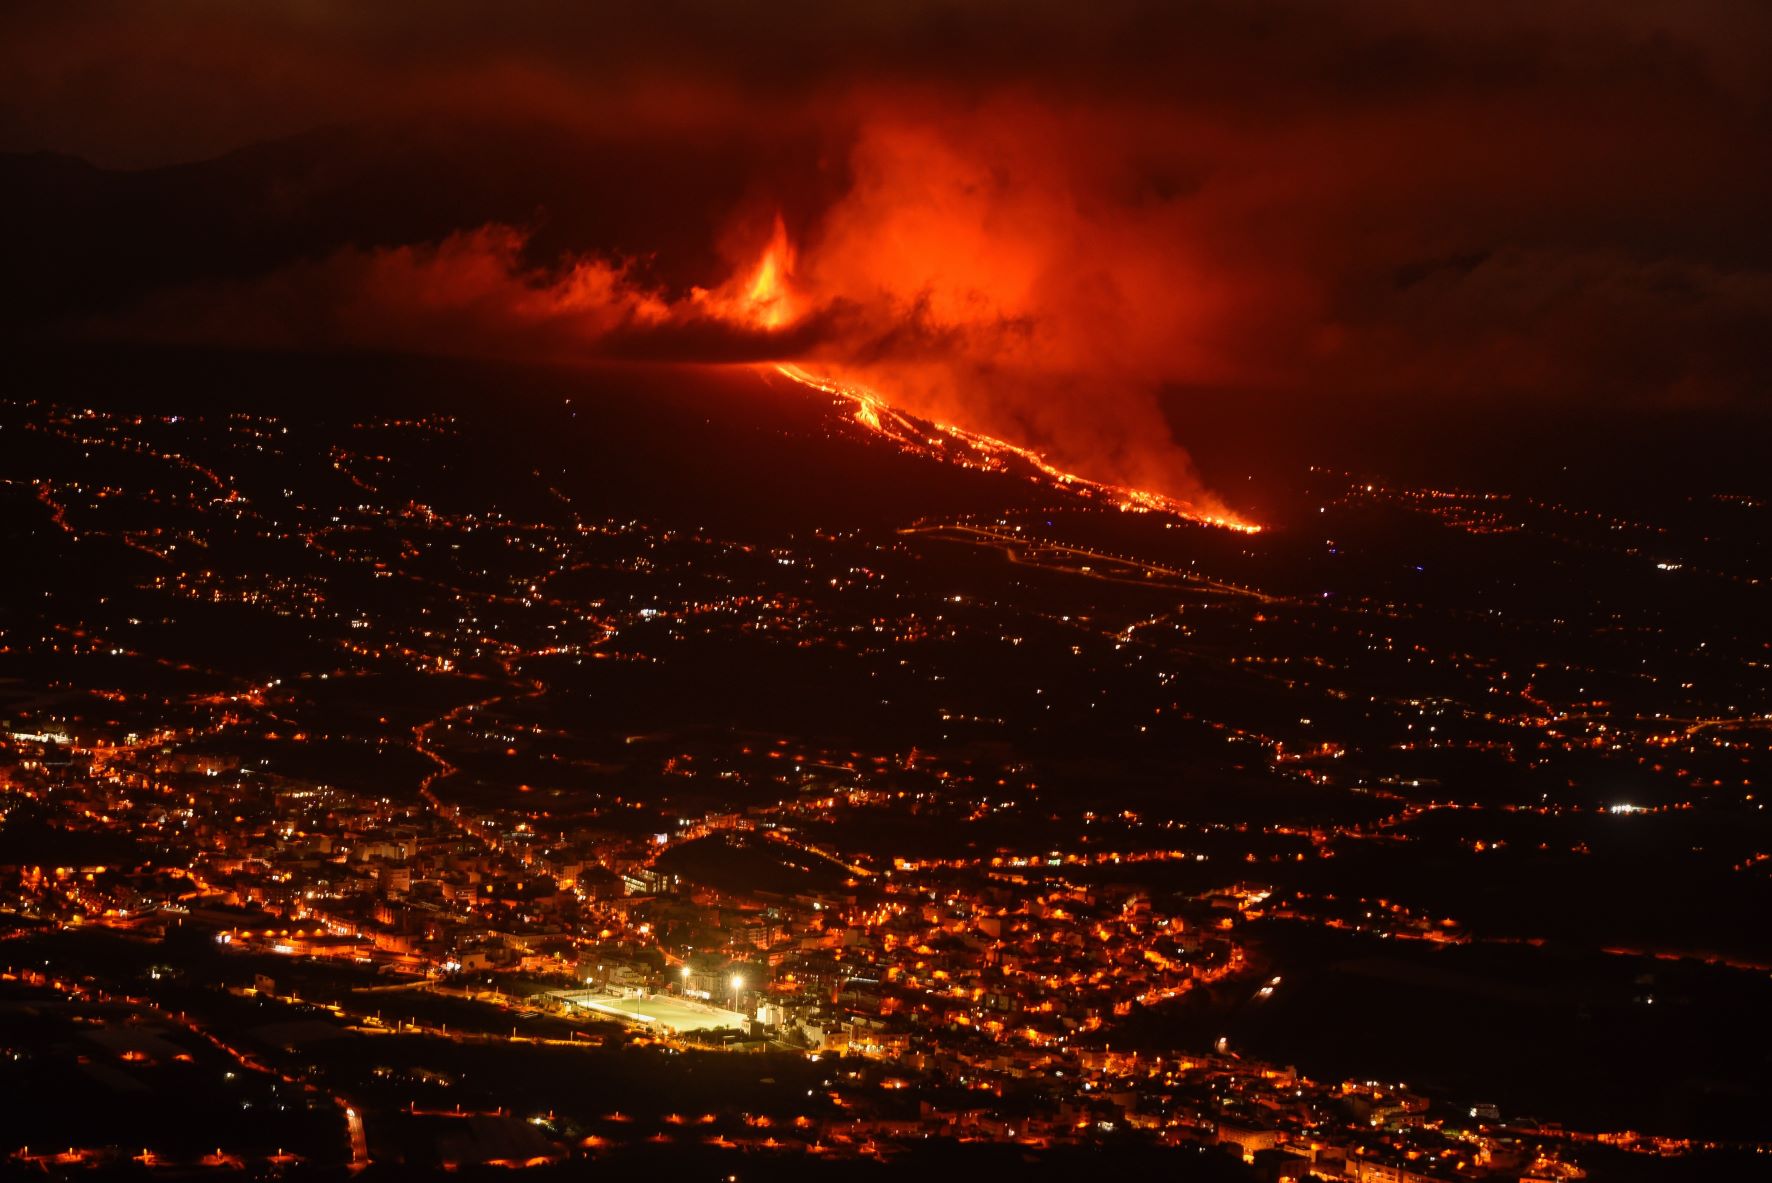 Vista de la colada de lava y del valle de Aridane desde el mirador de El Time, en el municipio de Tijarafe, en La Palma. Efeagro/Miguel Calero